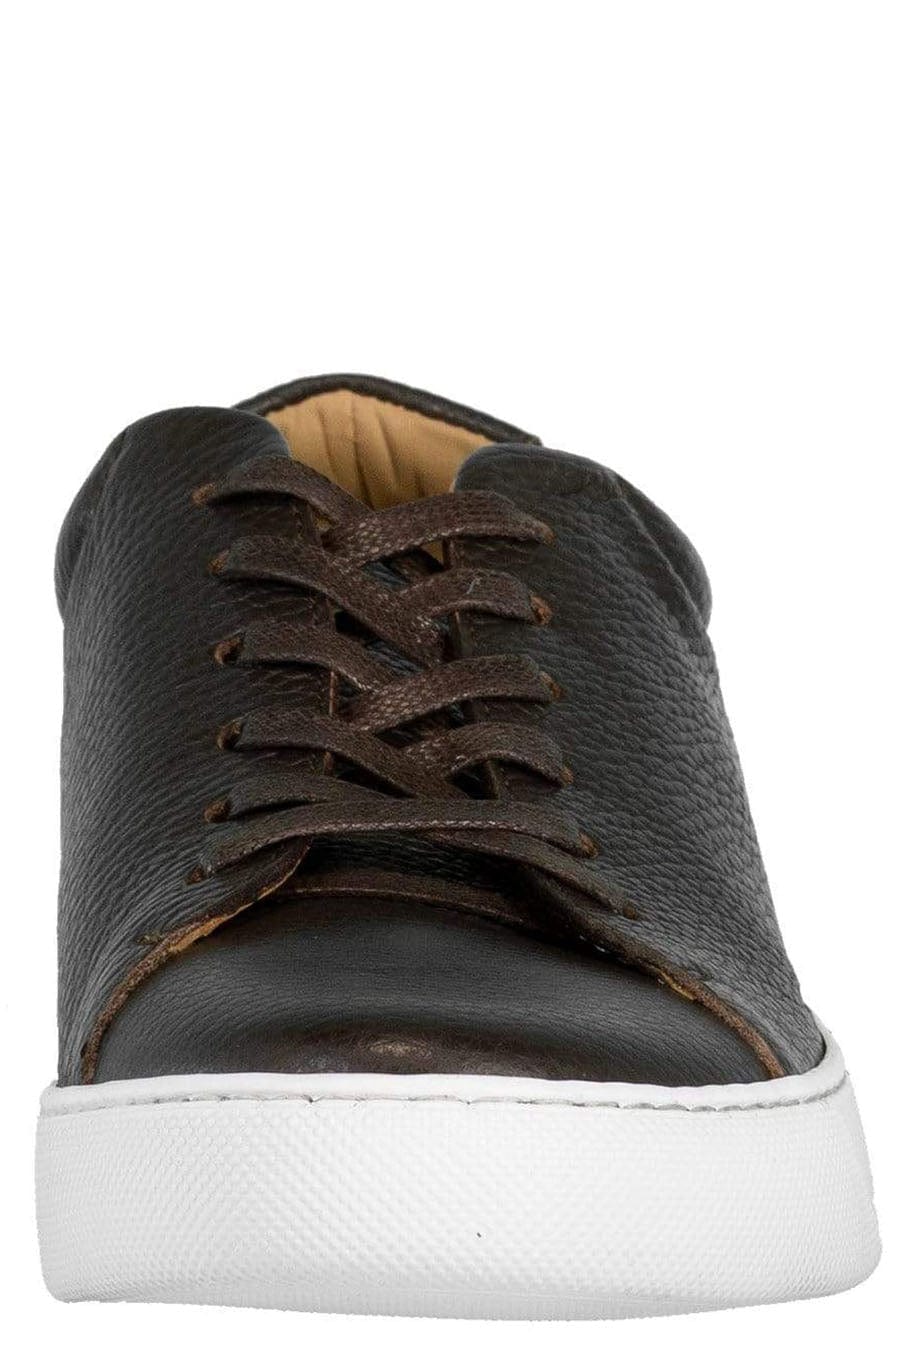 ELEVENTY-Men's Deerskin Leather Sneaker-